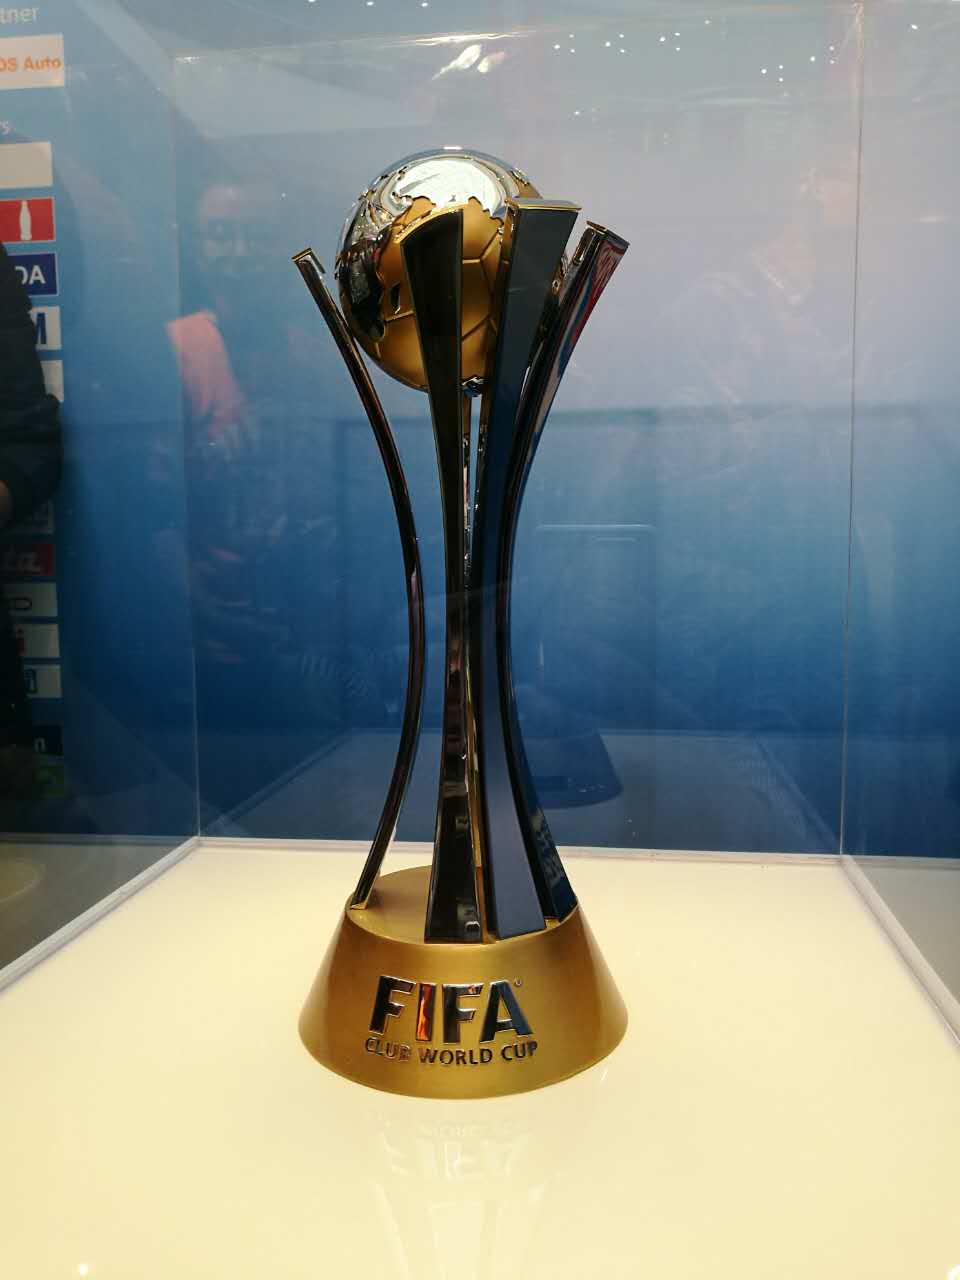 2016fifa世俱杯奖杯在杭巡展 球迷周末可赴万达广场参观